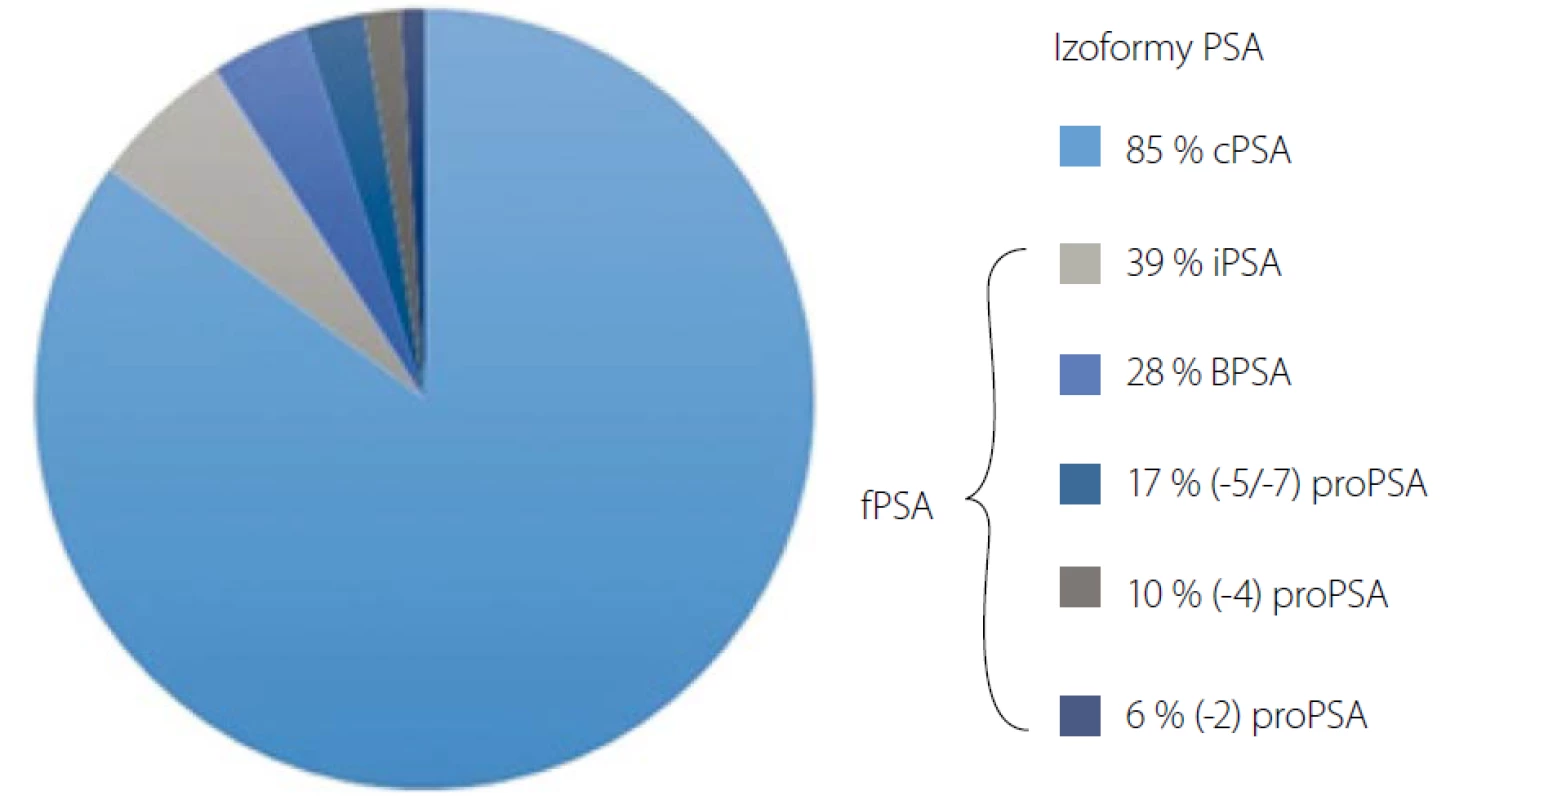 Izoformy PSA. cPSA (vázané PSA), BPSA (multiřetězcové PSA), iPSA (intaktní PSA), fPSA (volné PSA)<br>
Fig. 1. PSA isoforms. cPSA (complexed PSA), BPSA (benign PSA), iPSA (intact PSA), fPSA (free PSA)